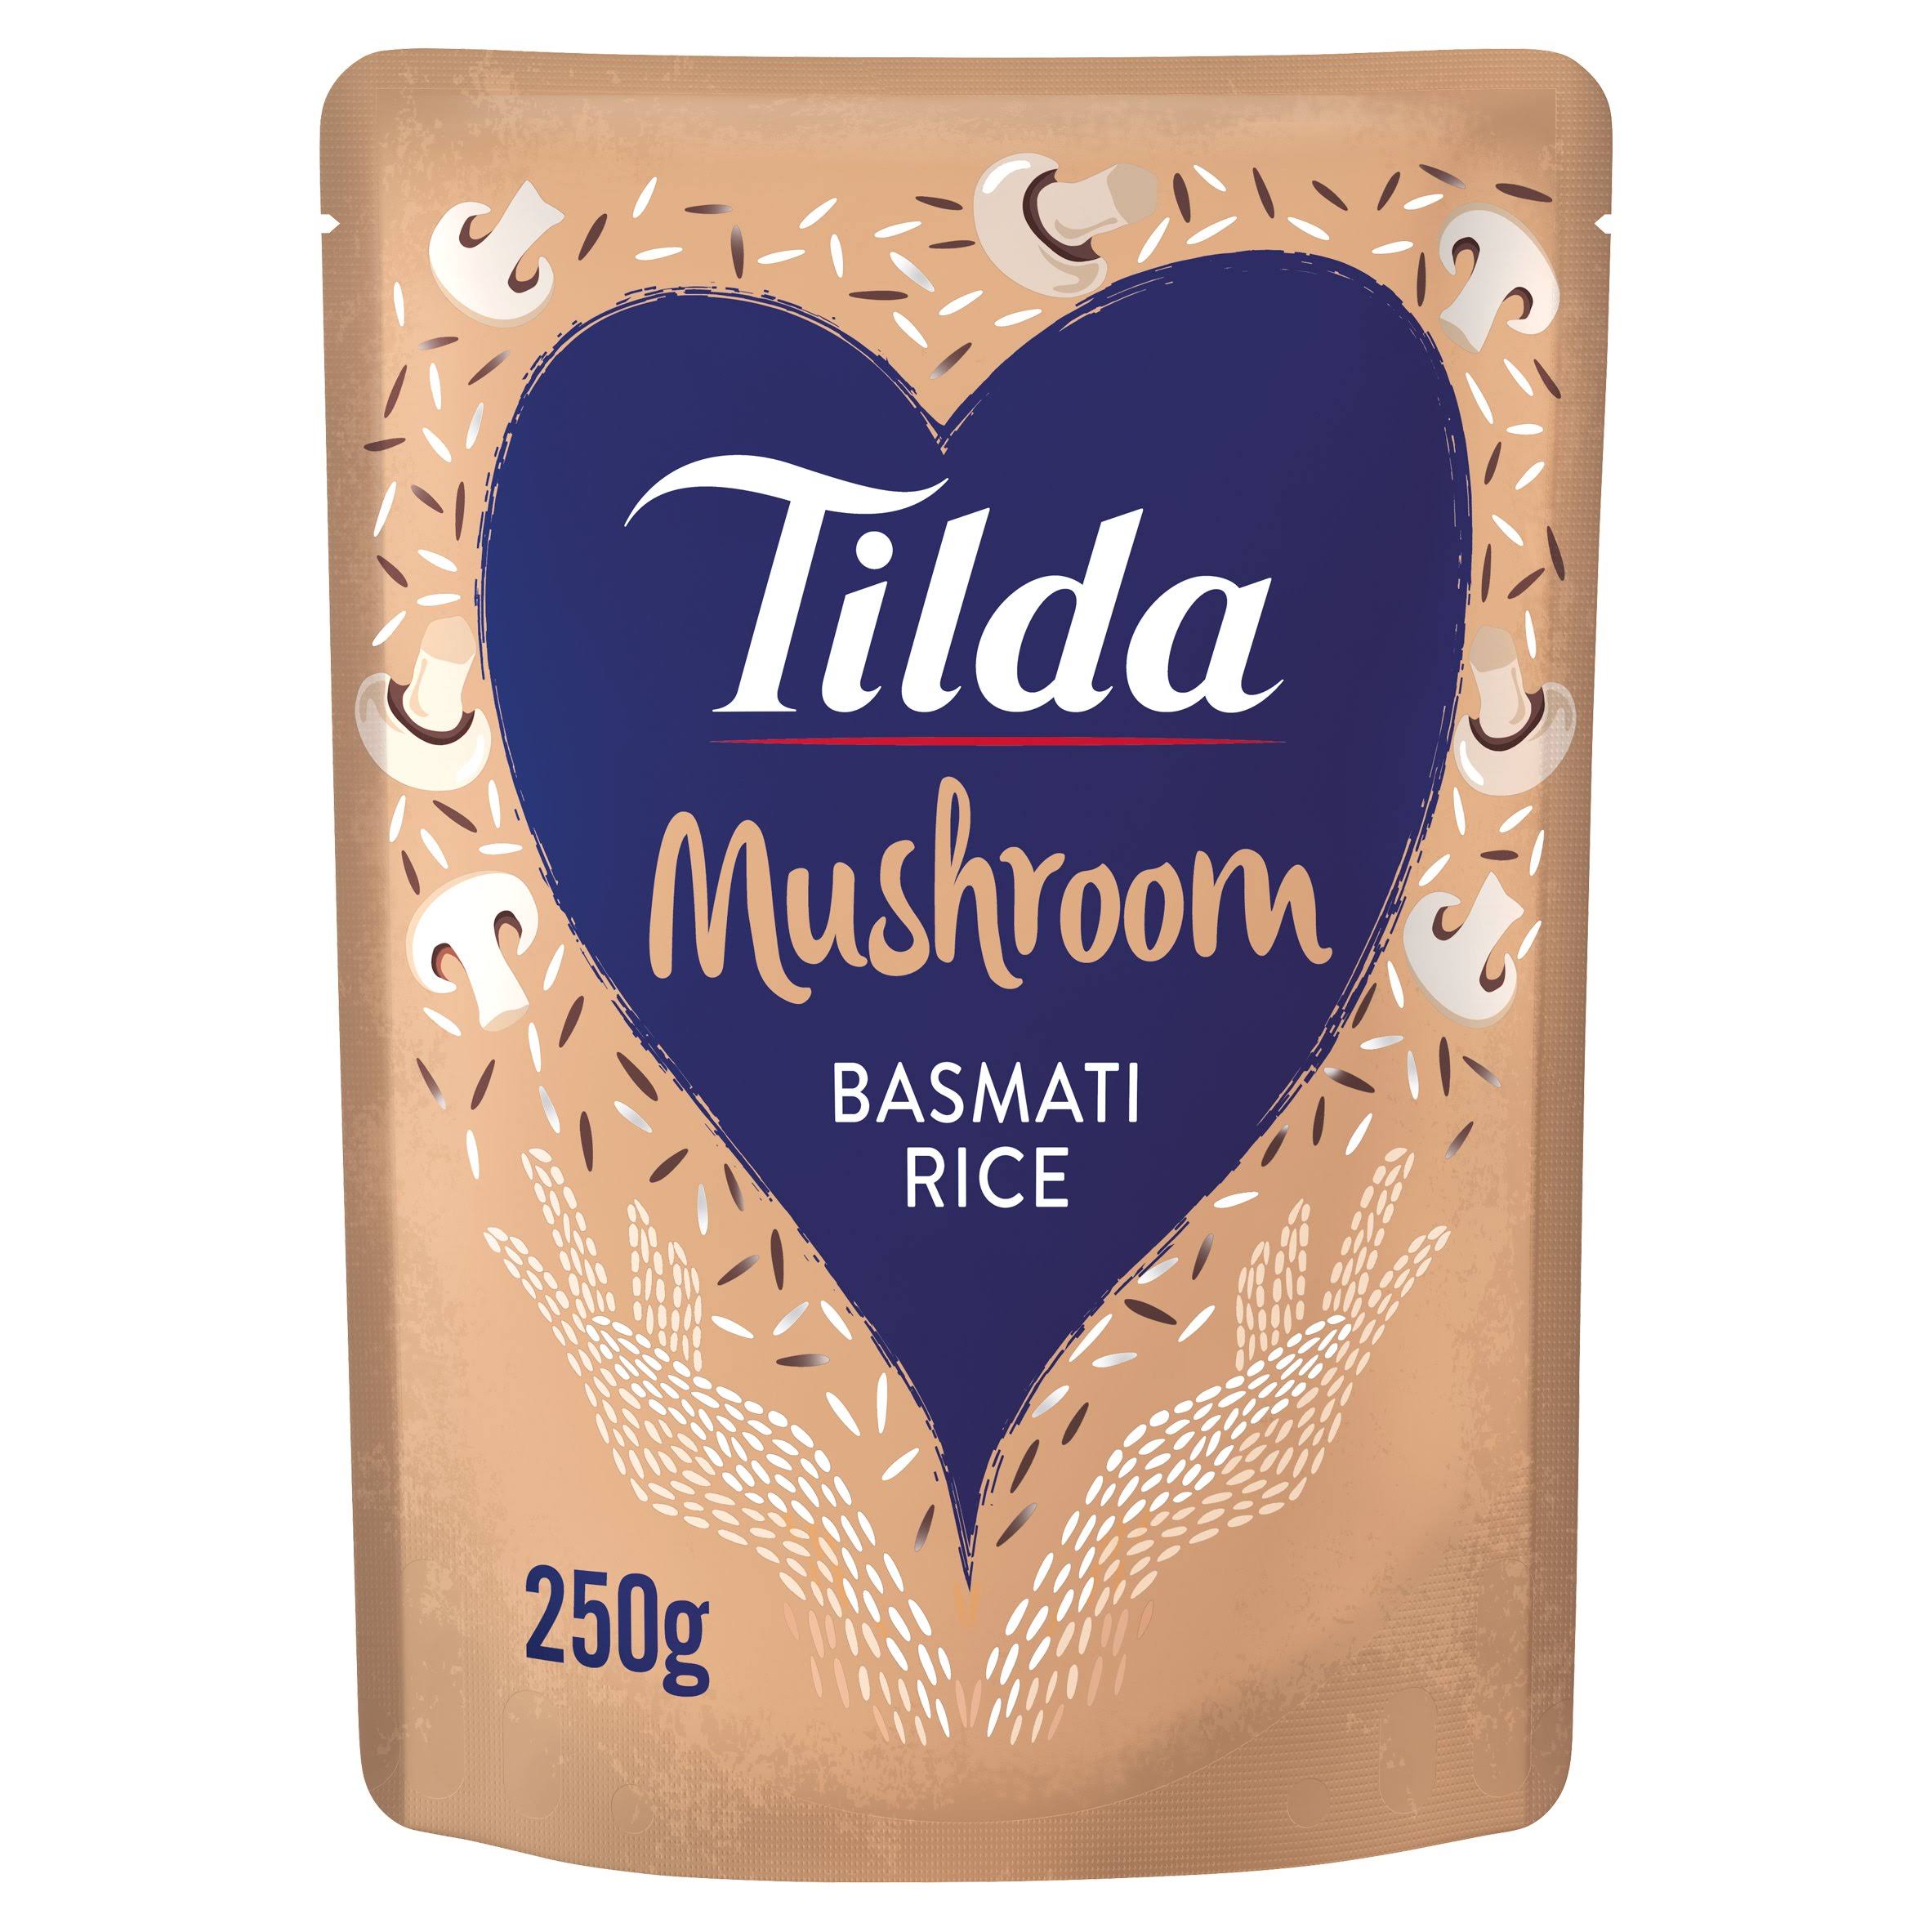 Tilda Mushroom Steamed Basmati Rice - 250g